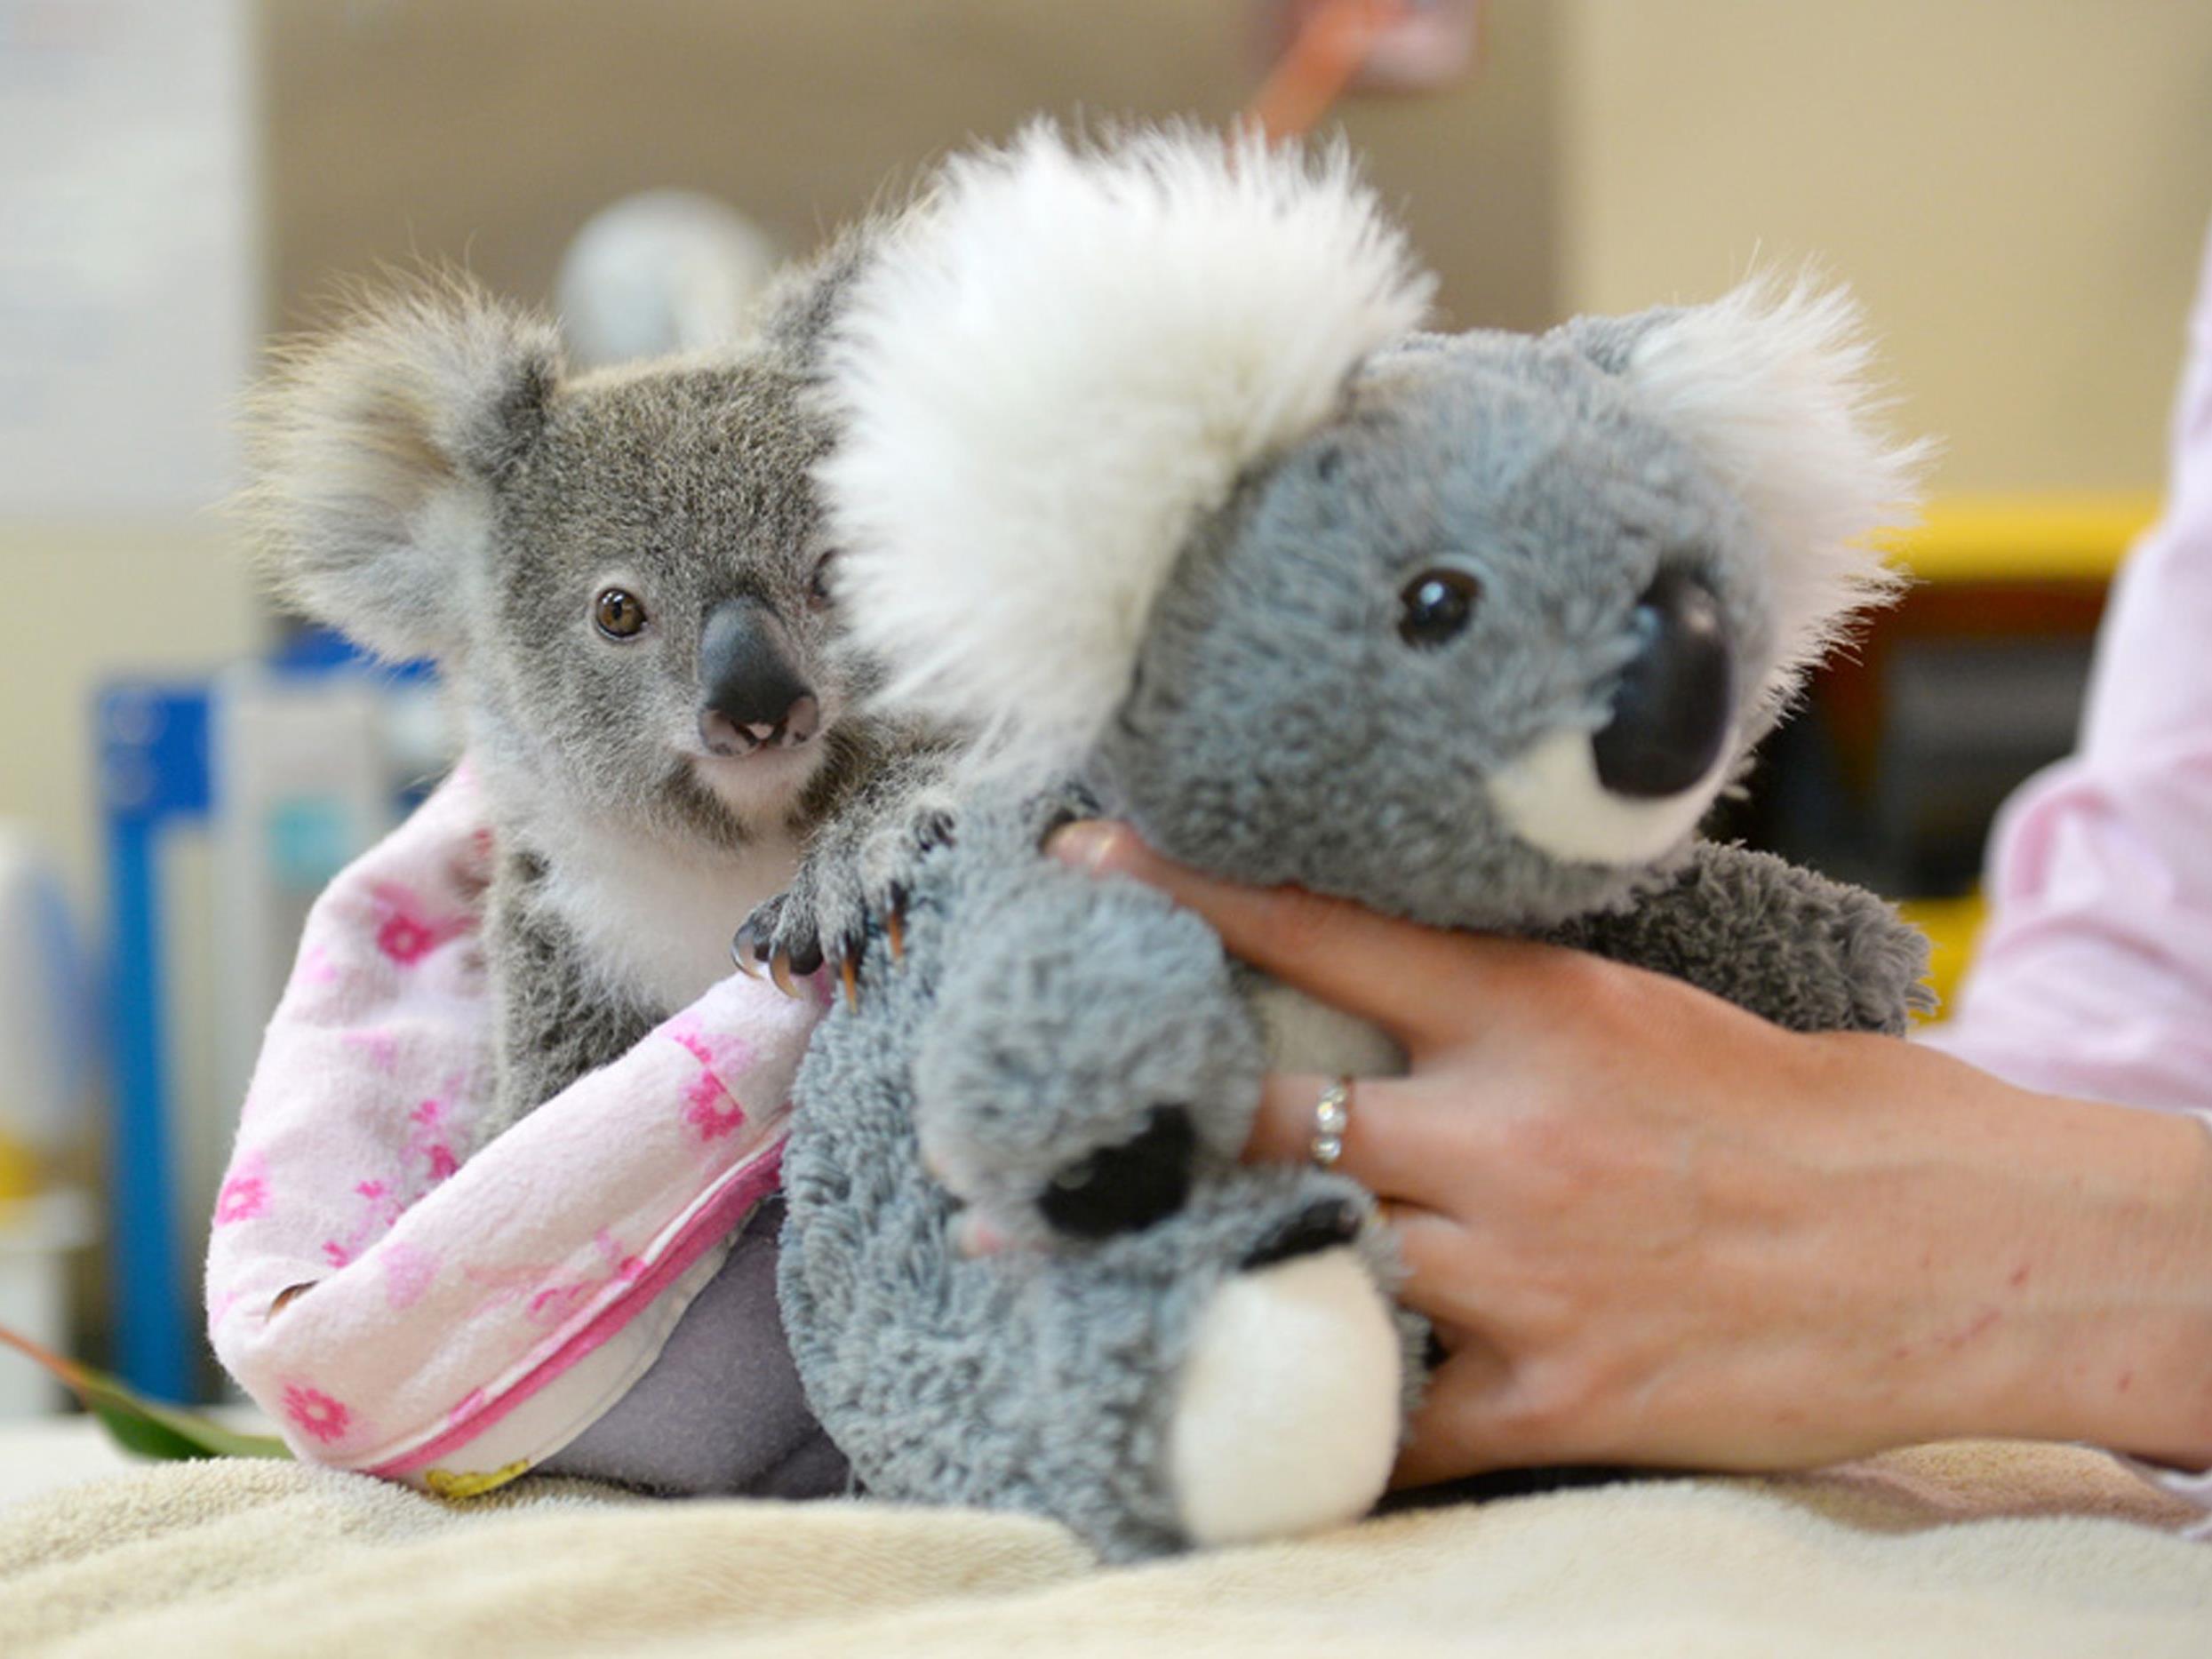 Das kleine Koala-Baby hat einen Plüsch-Freund gefunden.